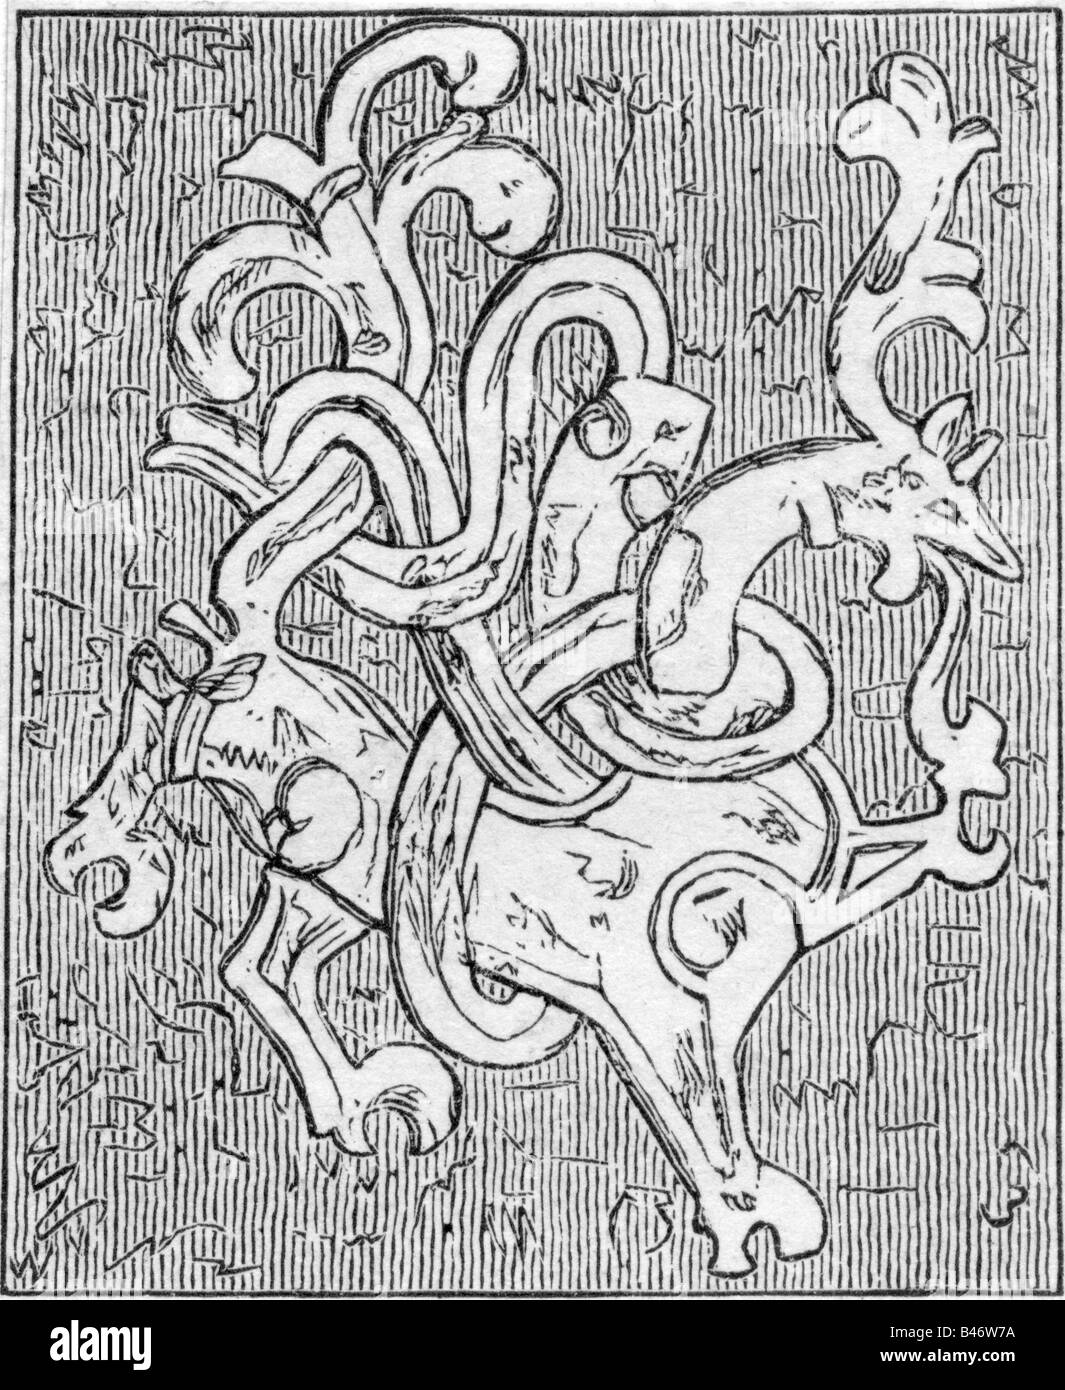 Superstition, créatures mythiques, dragons, relief, pierre tombale de Gorm 'The Old' (pré 900 - passé 935), Jelling, Danemark, gravure en bois, XIXe siècle, , Banque D'Images